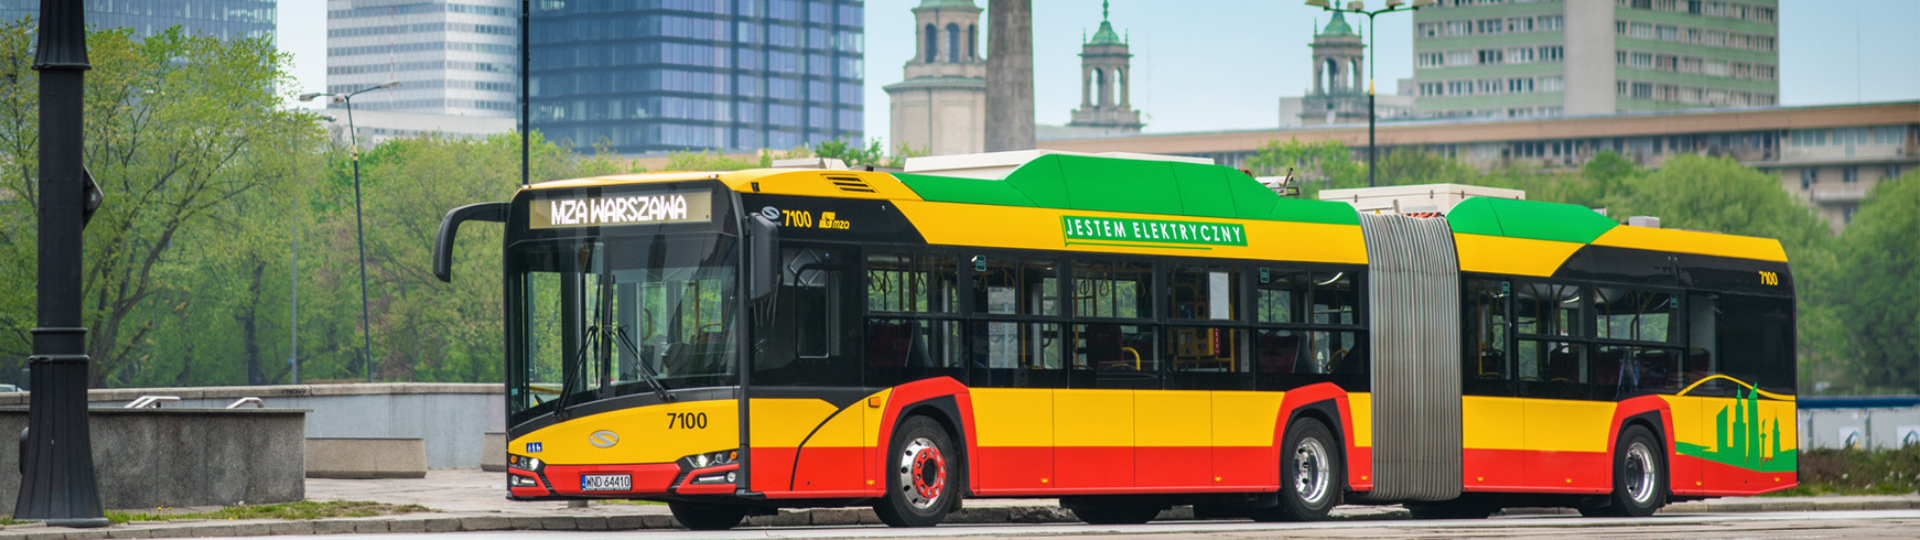 Solaris erhält Zuschlag für den größten Auftrag in Europa – Lieferung von 130 Gelenkelektrobussen nach Warschau!